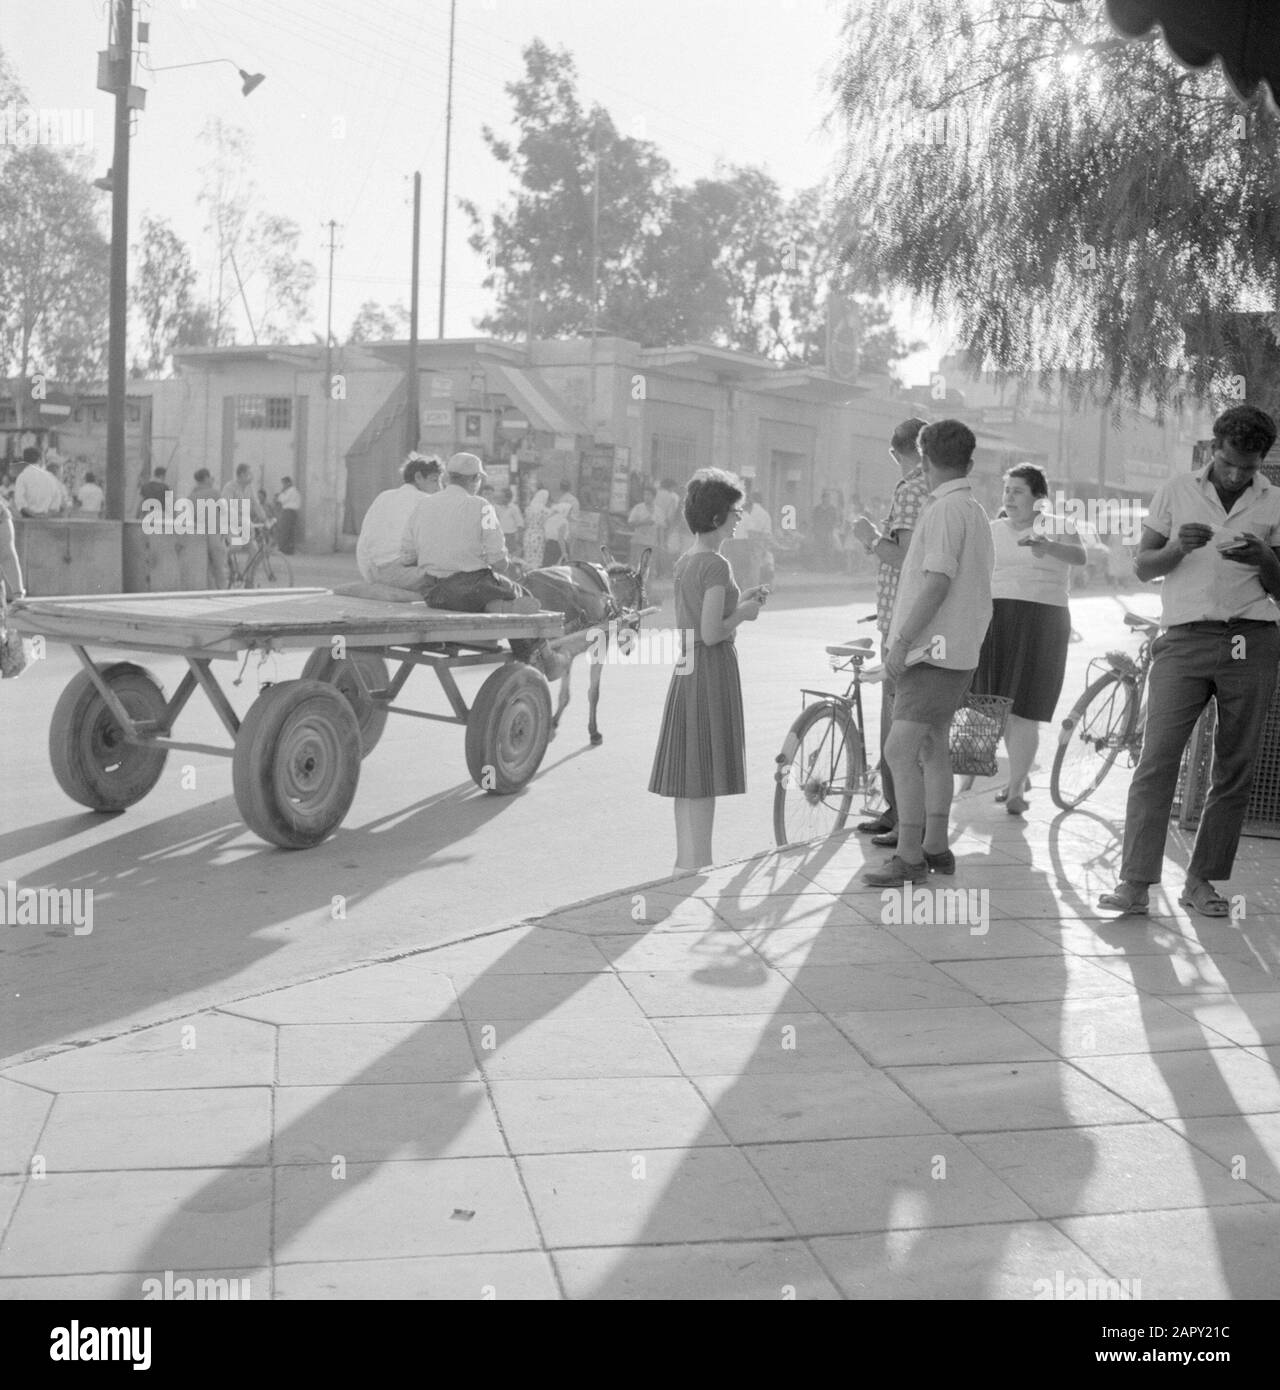 Israël: Bersheba rue commerçante avec un chariot à ânes, des vélos et des piétons Date: Non dédrée lieu: Beersheba, Bersheba, Israël mots clés: Ânes, bicyclettes, images de rue, transport, boutiques Banque D'Images